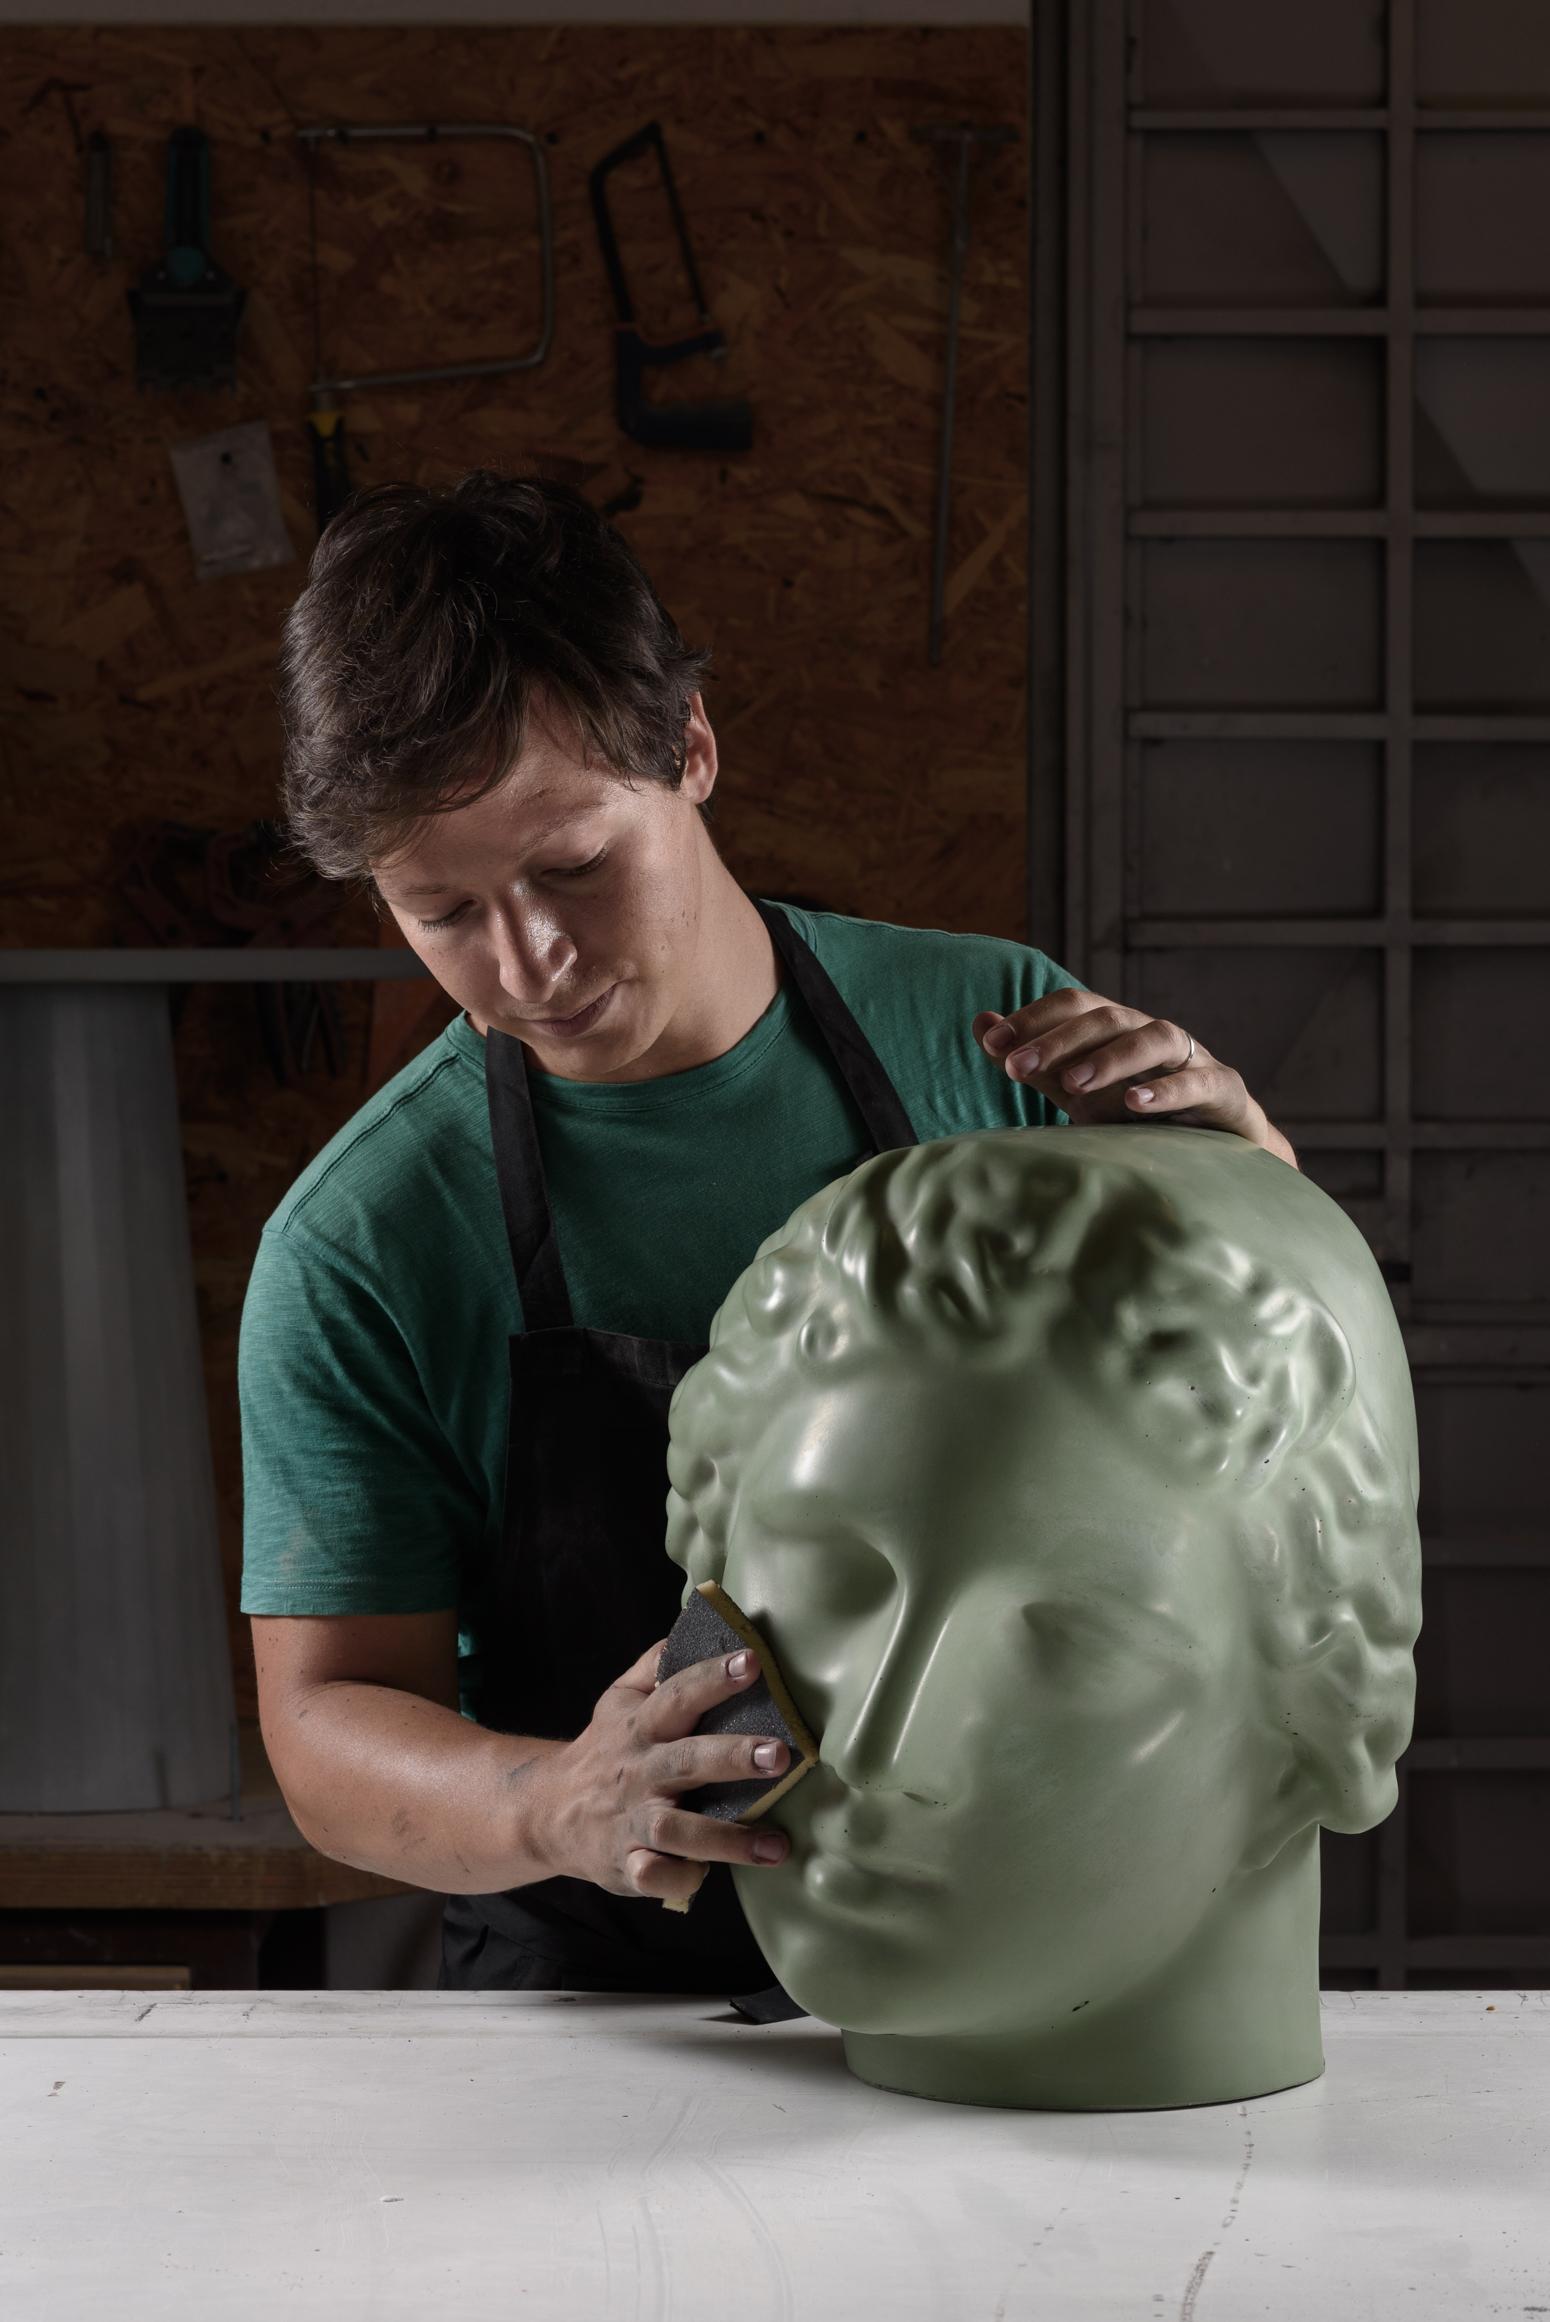 italien Tabouret en béton Betti du 21ème siècle de l'atelier Irvine Betti en ciment vert Fir, fabriqué à la main en vente